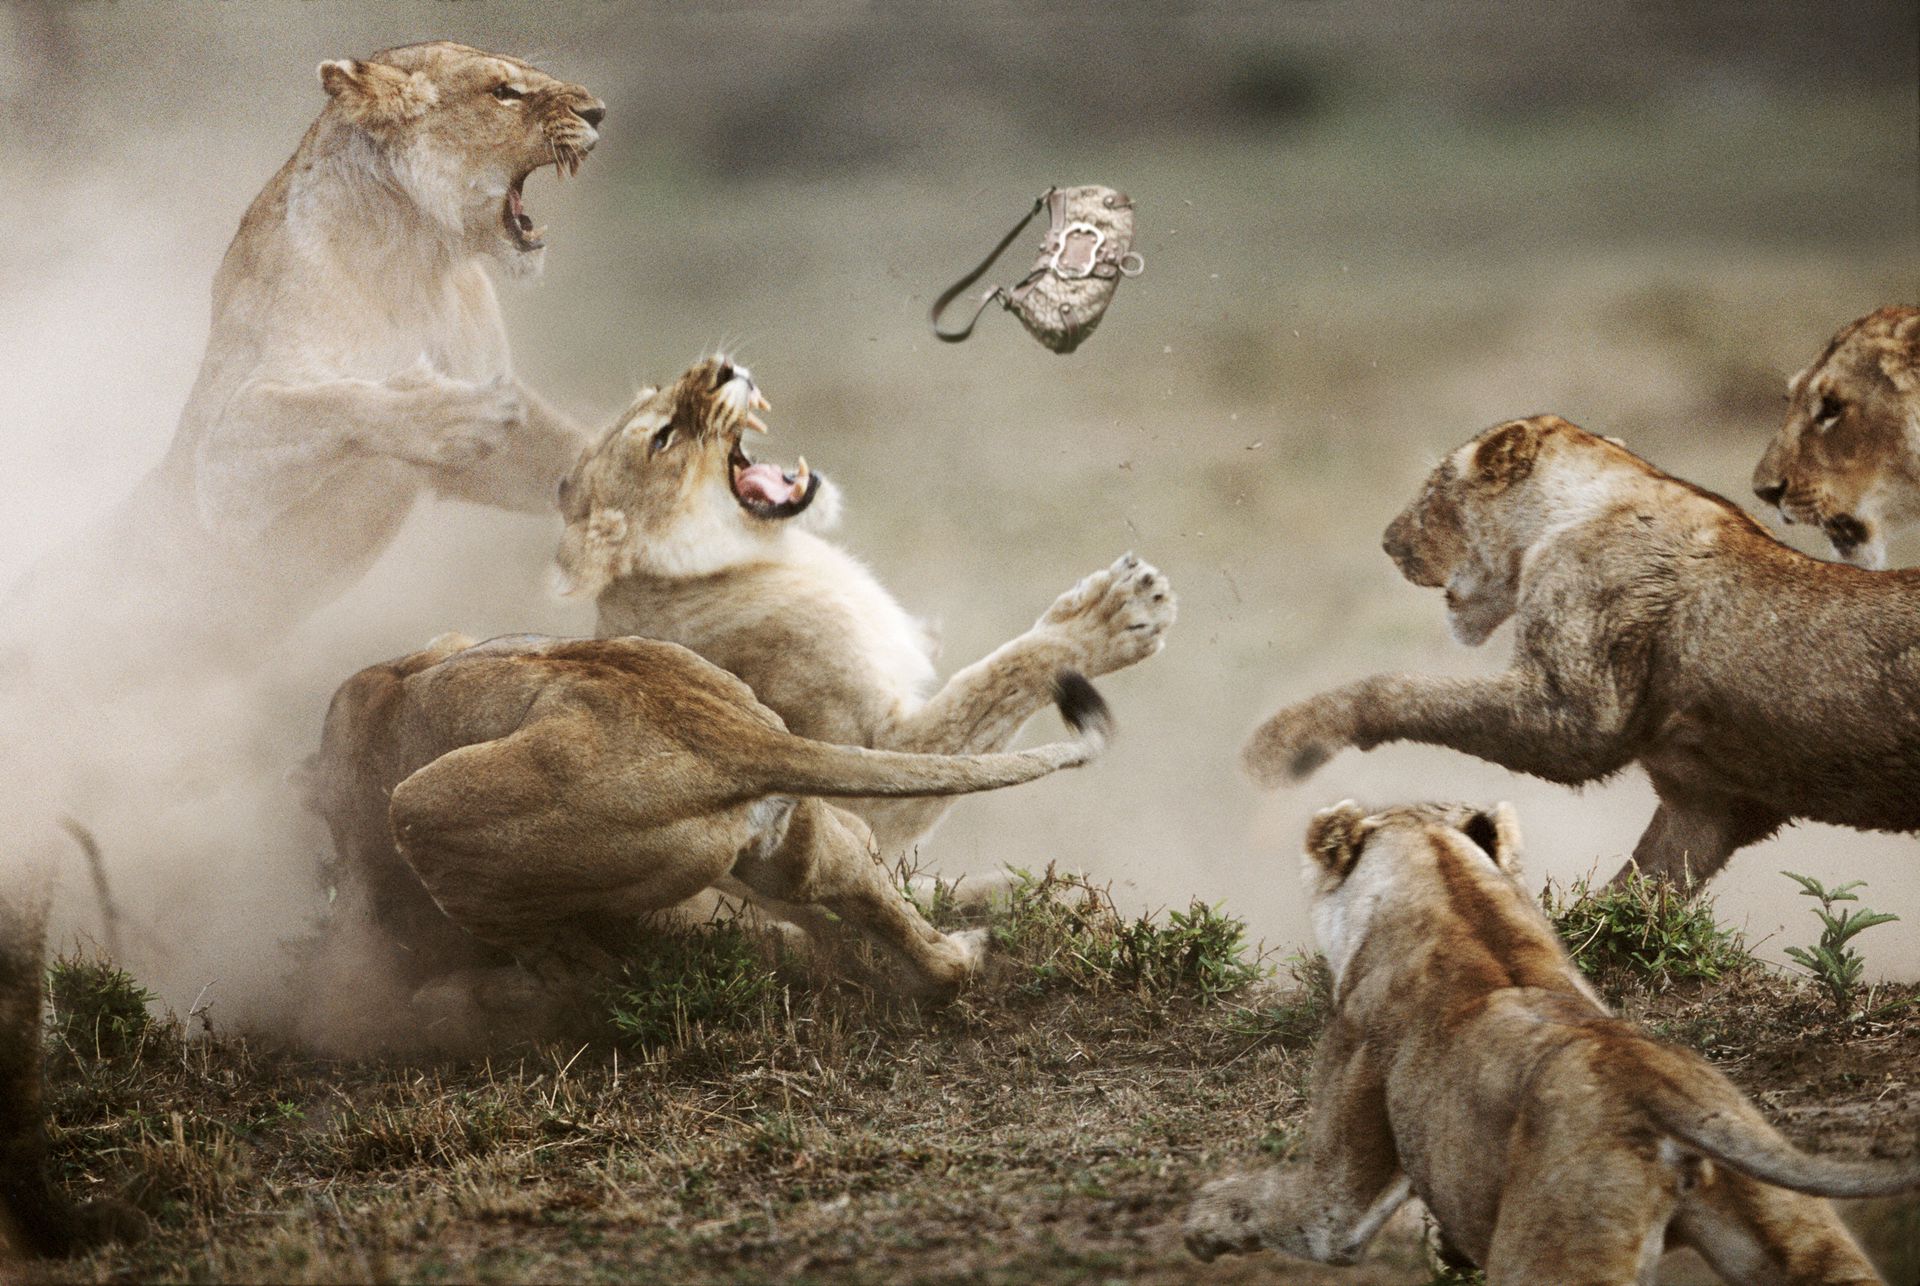 Бои дикий животный. Битва Львов за Прайд. Стив Блум фотограф. Животные дерутся. Агрессия животных.